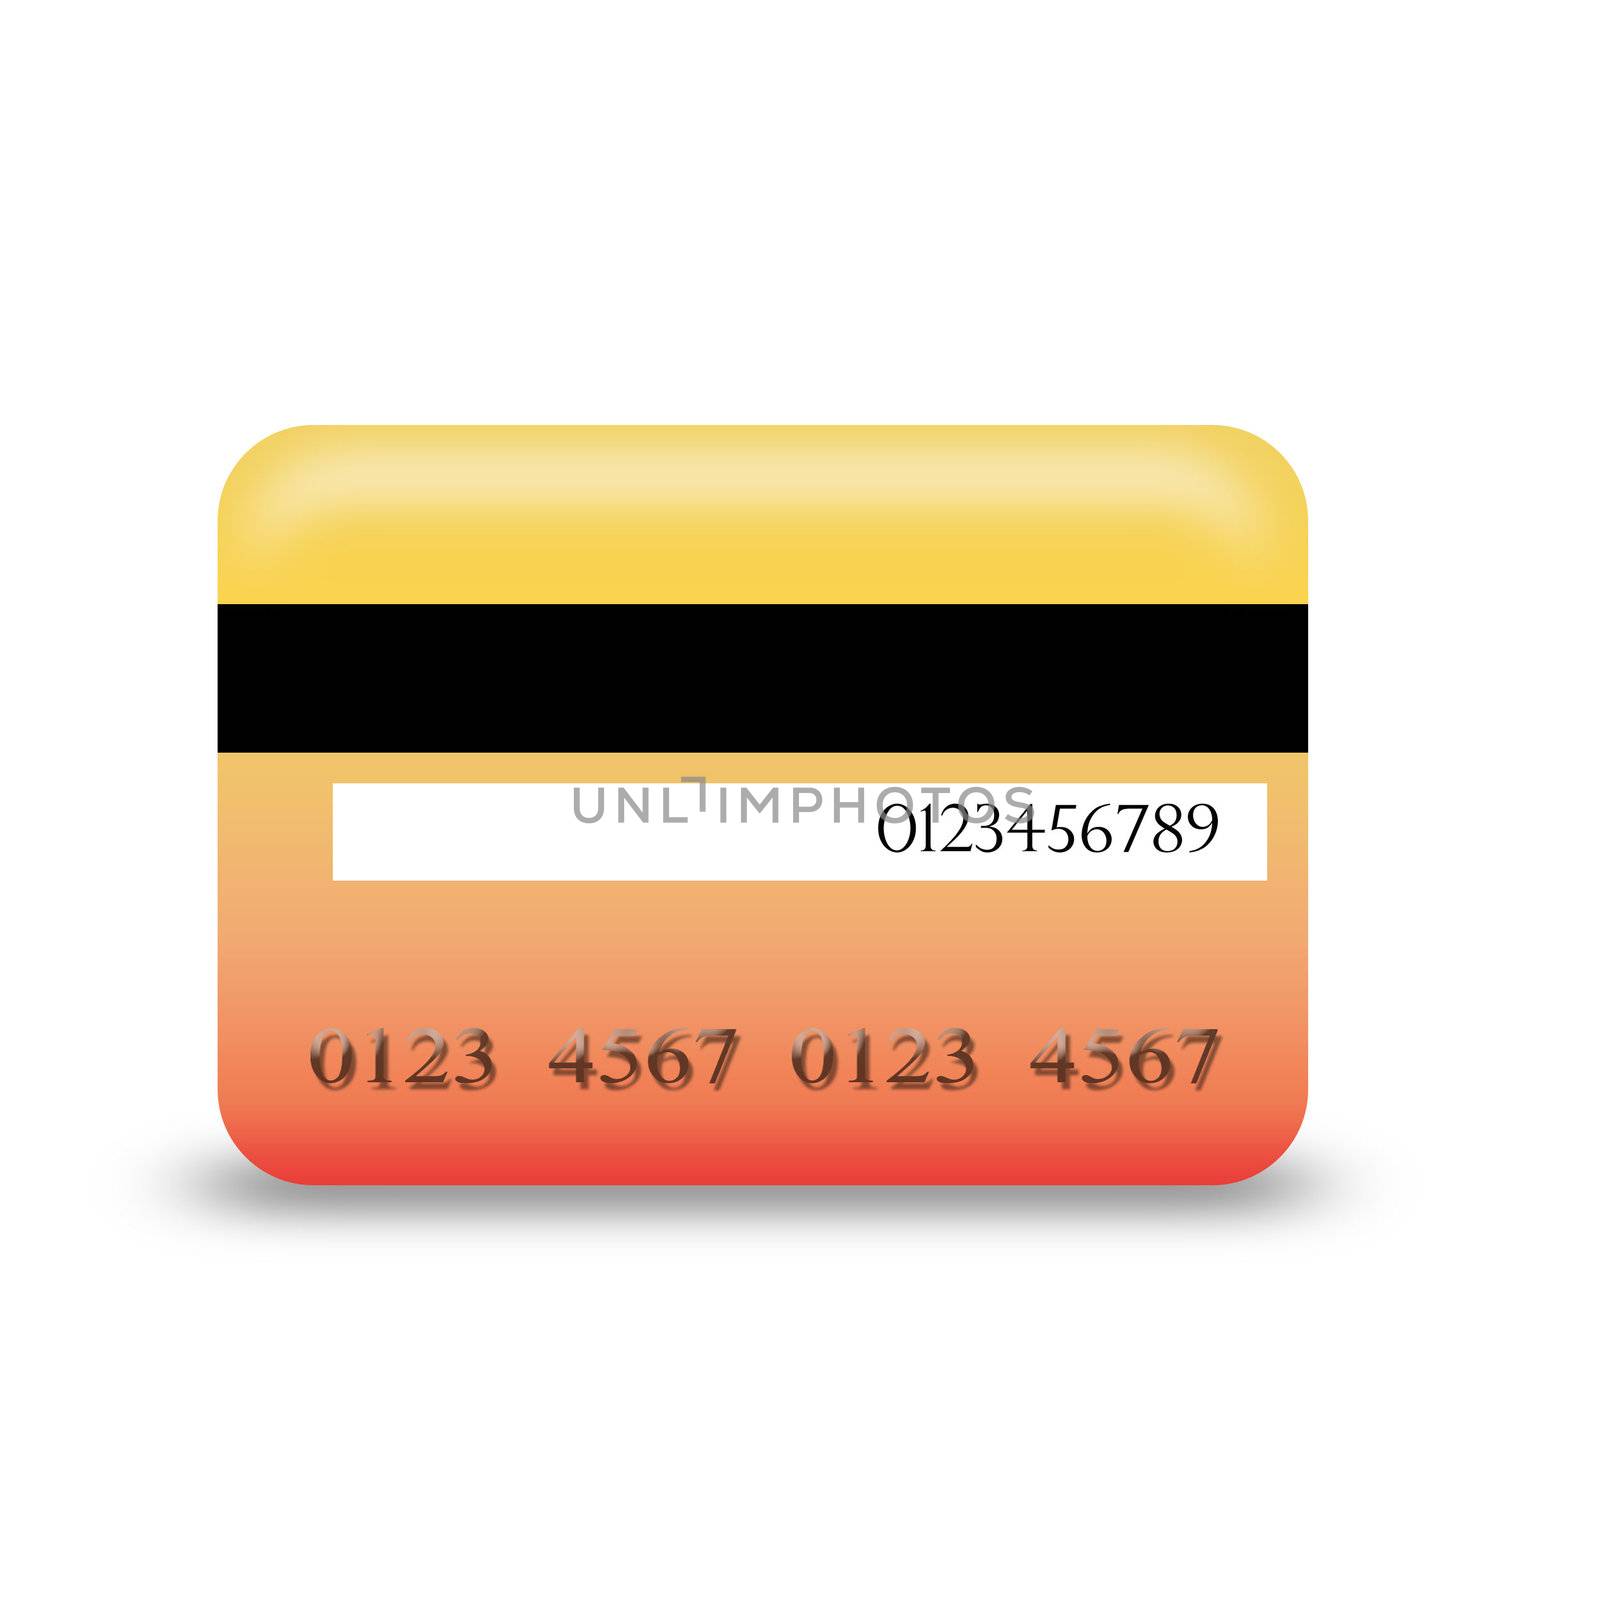 credit card by shawlinmohd